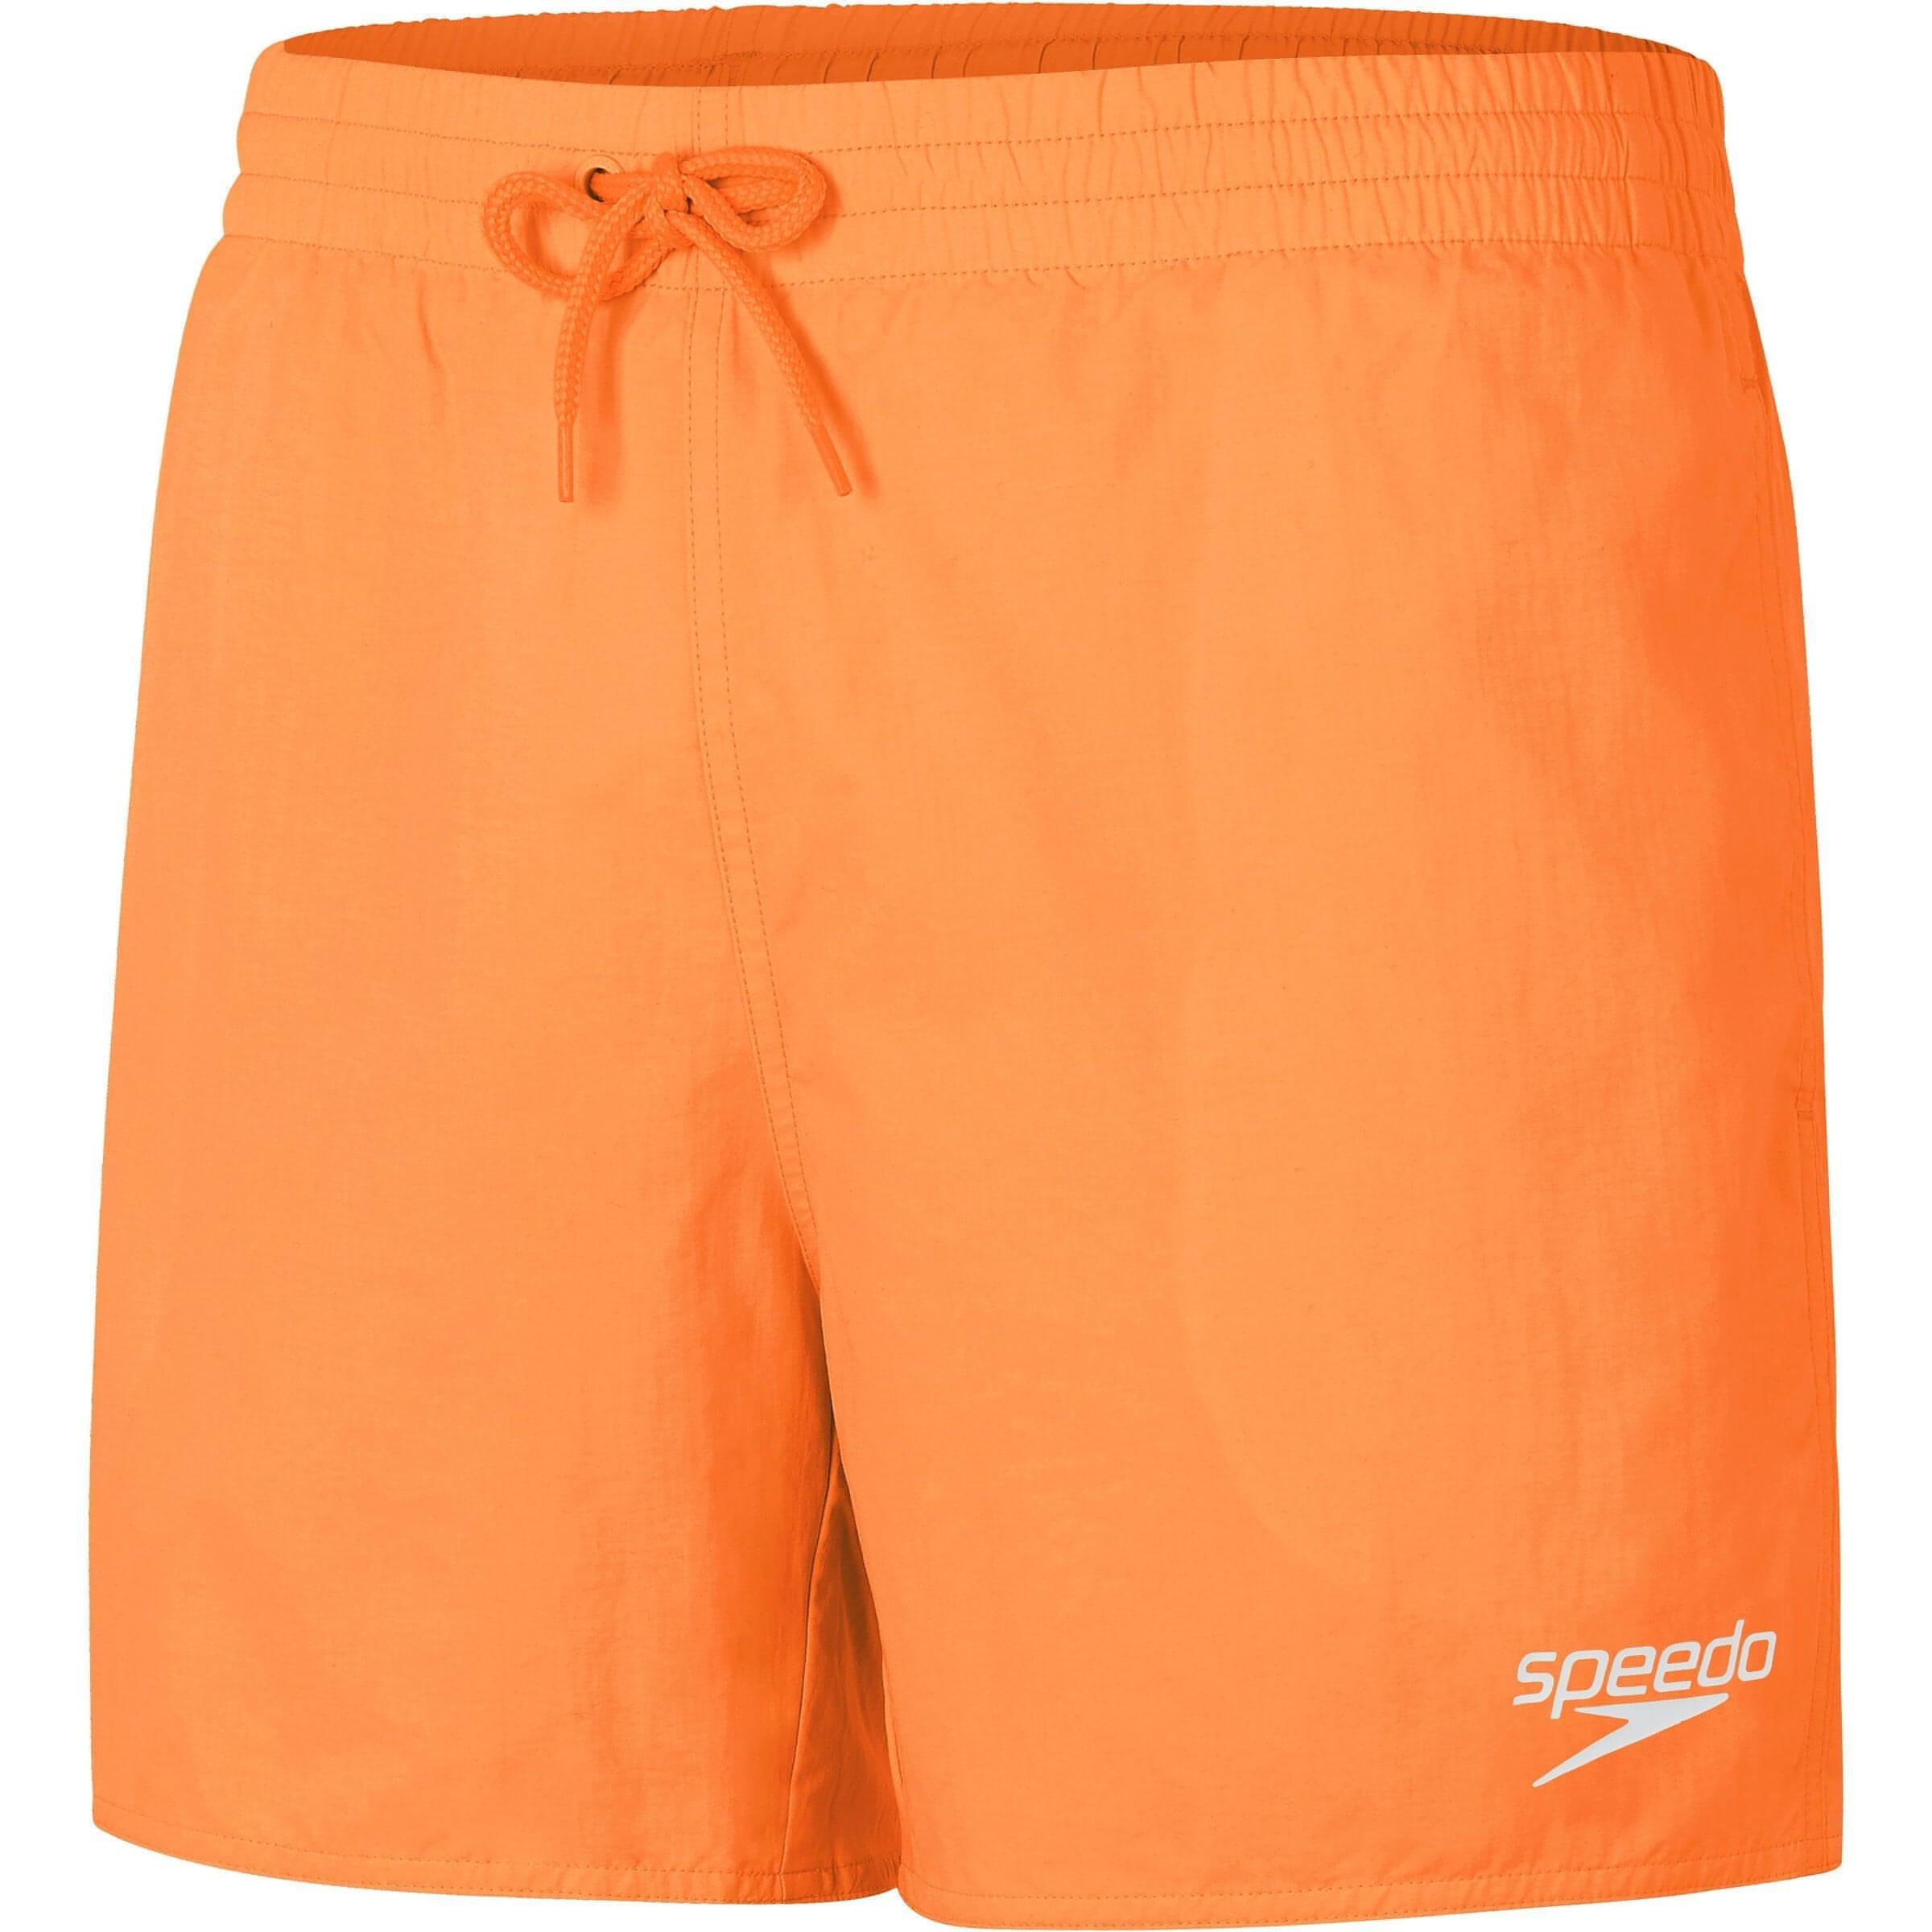 Speedo Core Leisure 16 Inch Mens Swim Shorts - Orange – Start Fitness